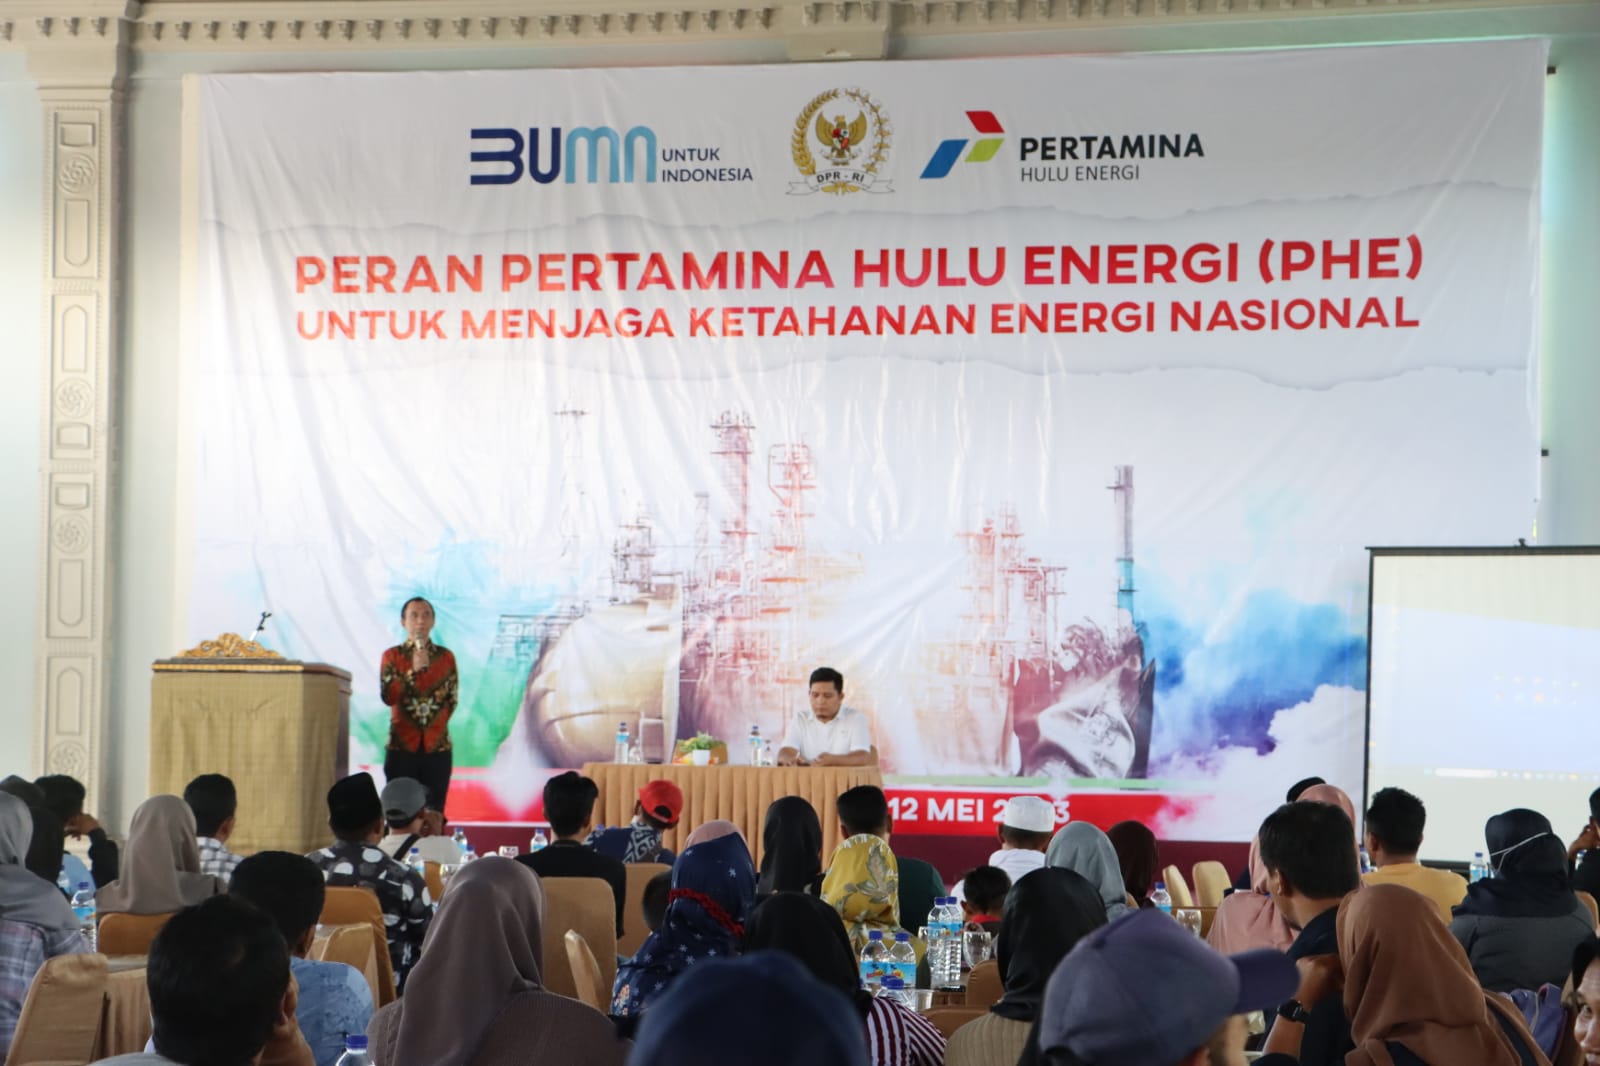 Anggota DPR RI Syamsul Luthfi Sampaikan Pentingnya Kemandirian Energi